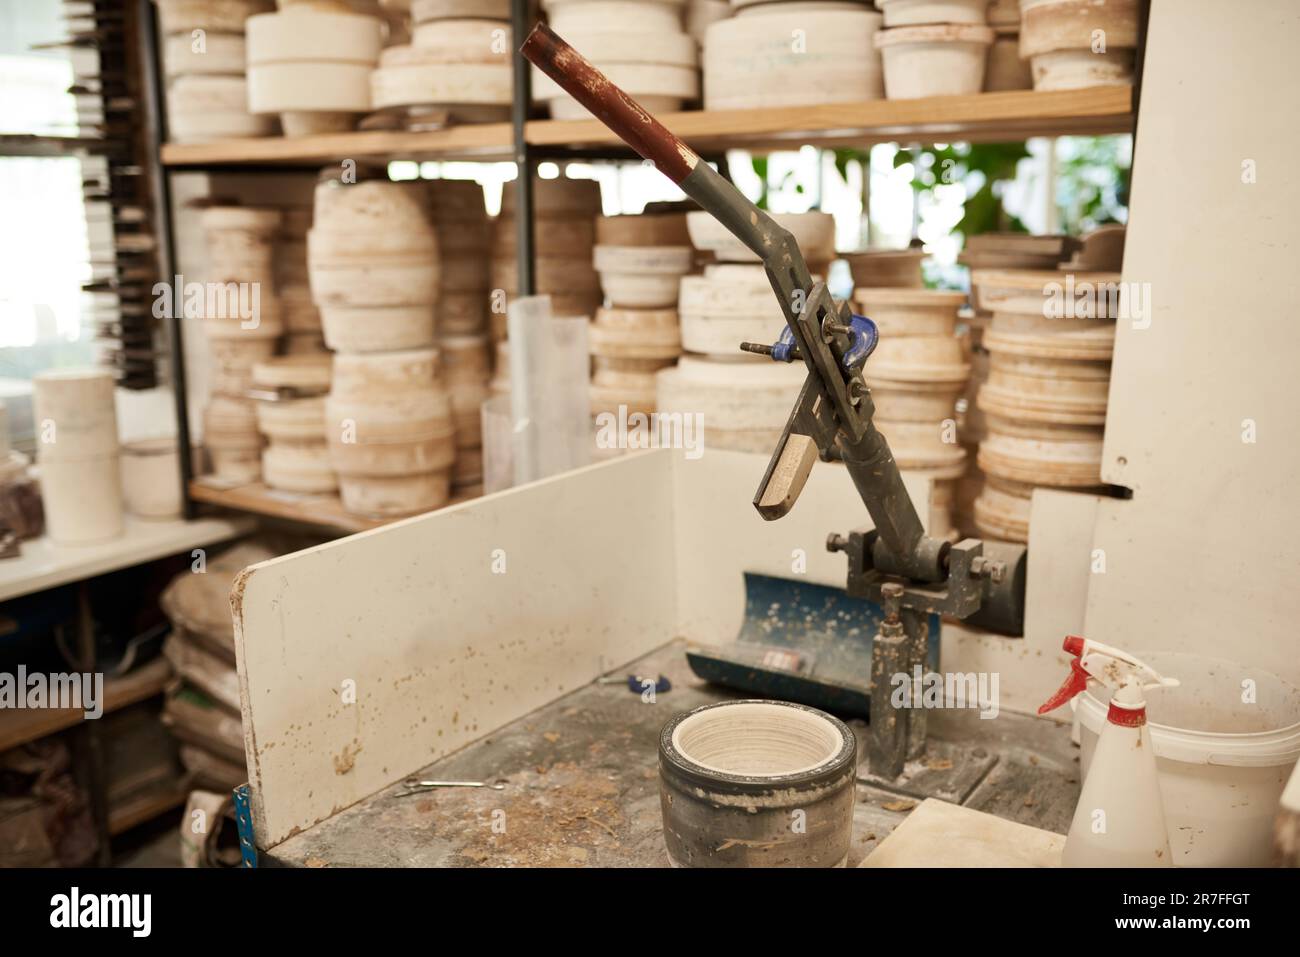 Moule assis sur un banc dans un grand atelier de fabrication de poterie Banque D'Images